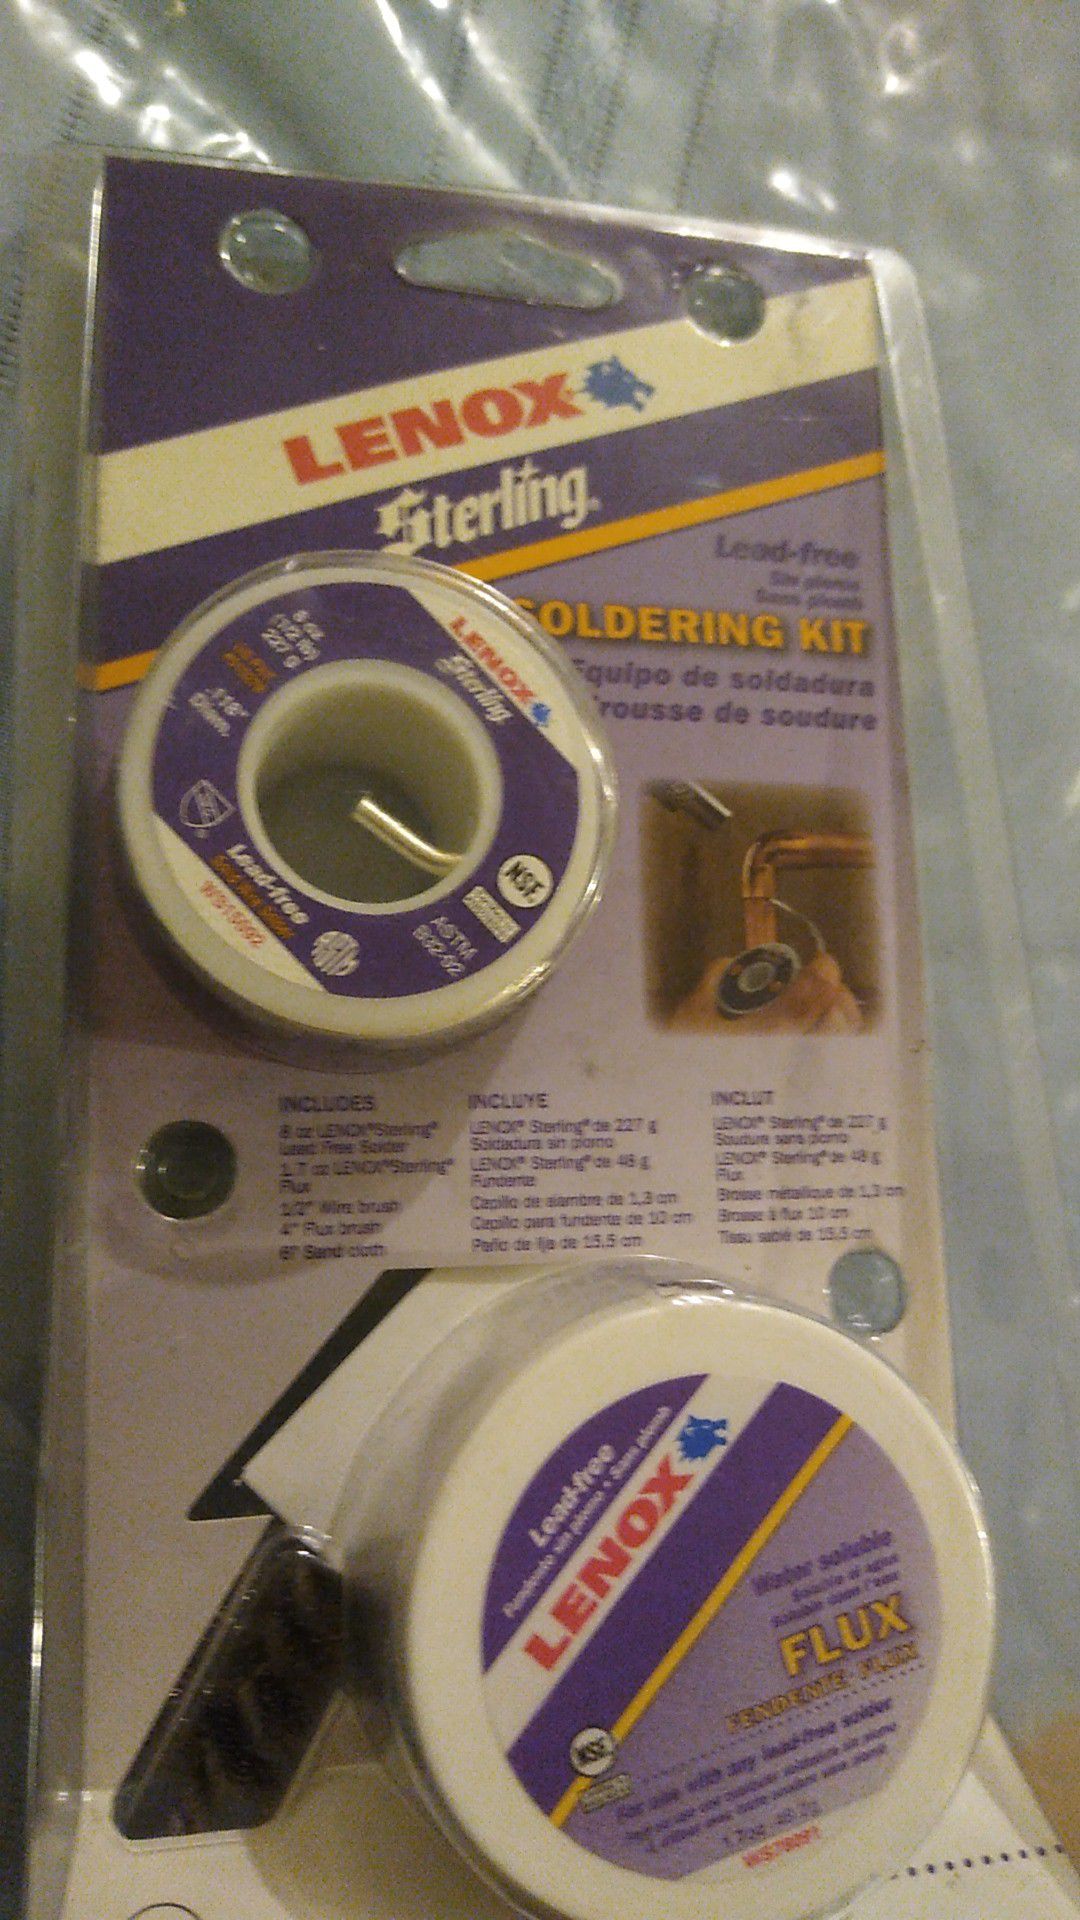 Lenox Sterling Soldering kit